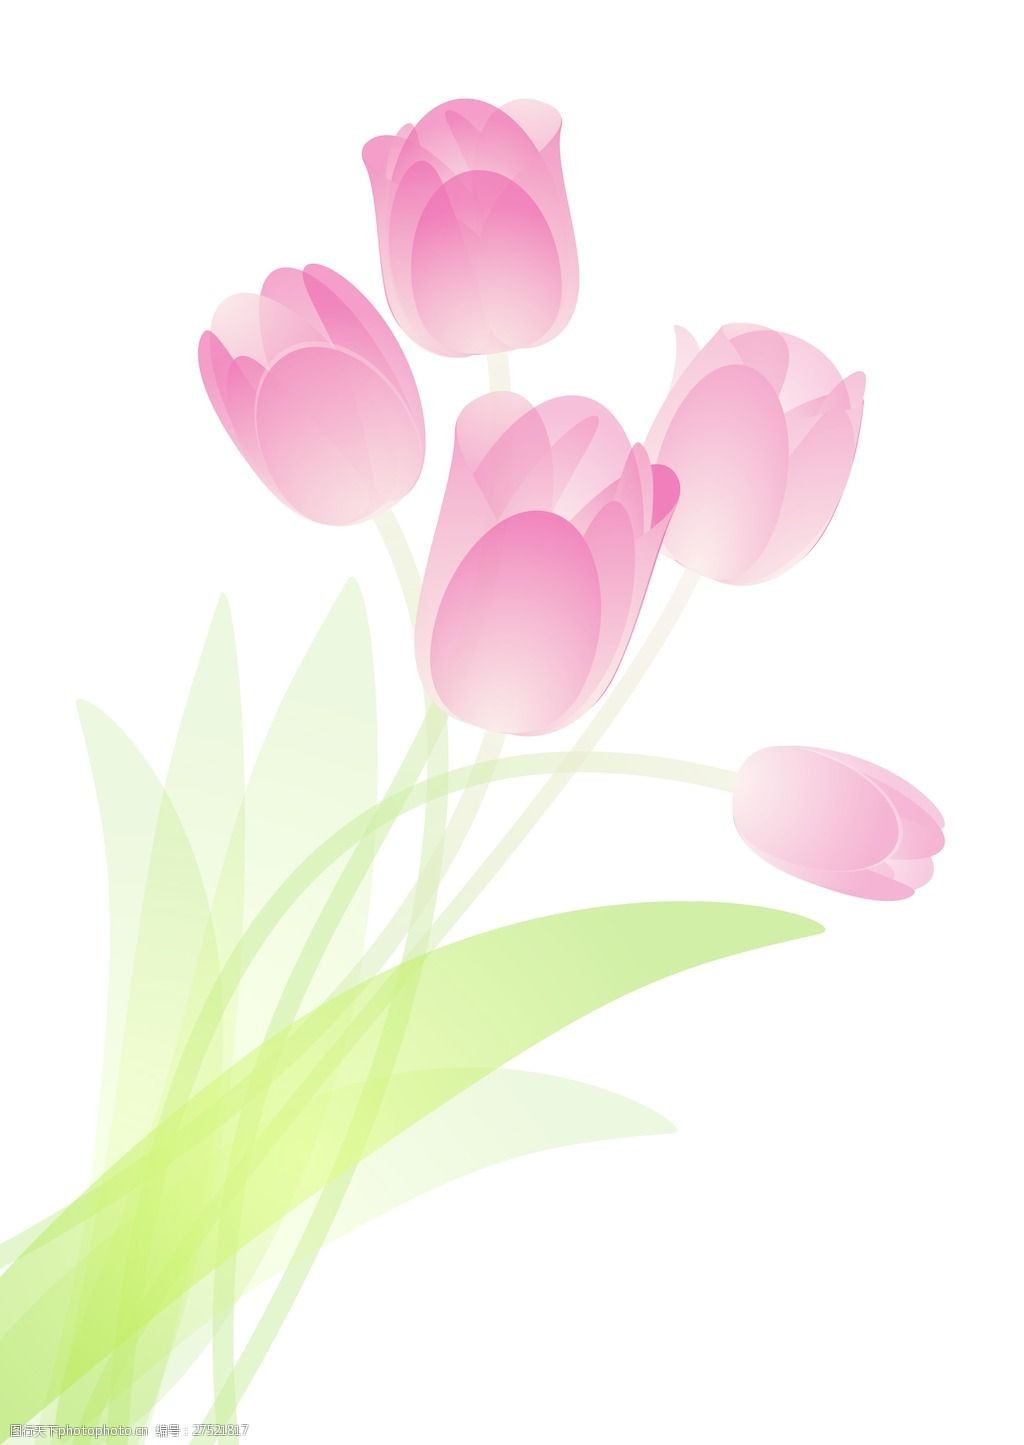 粉红色的郁金香花束向量